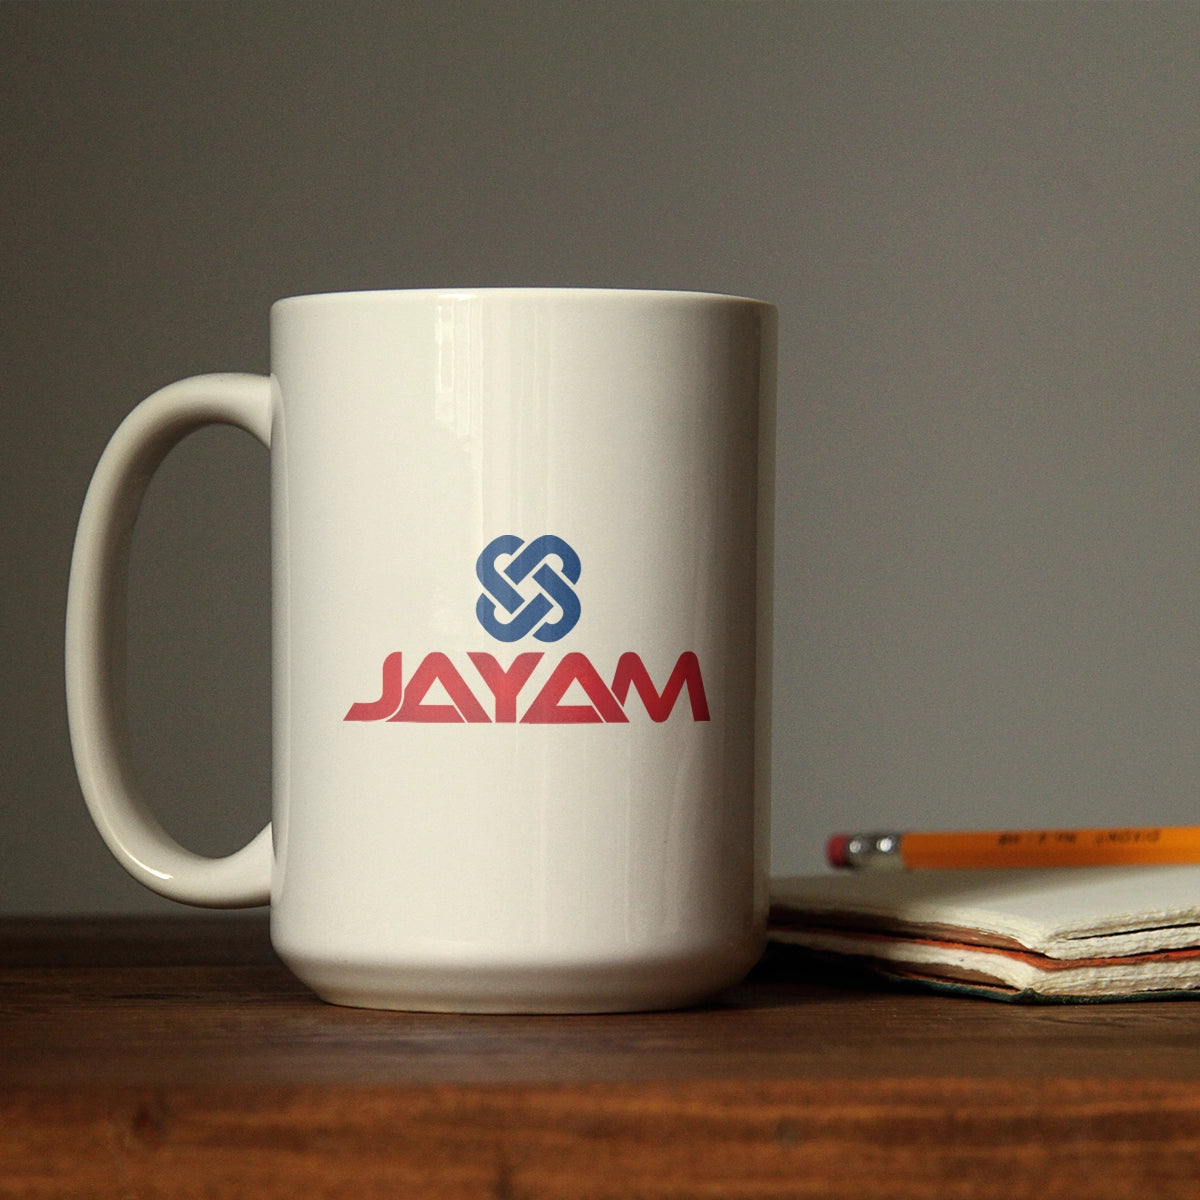 jayam.com